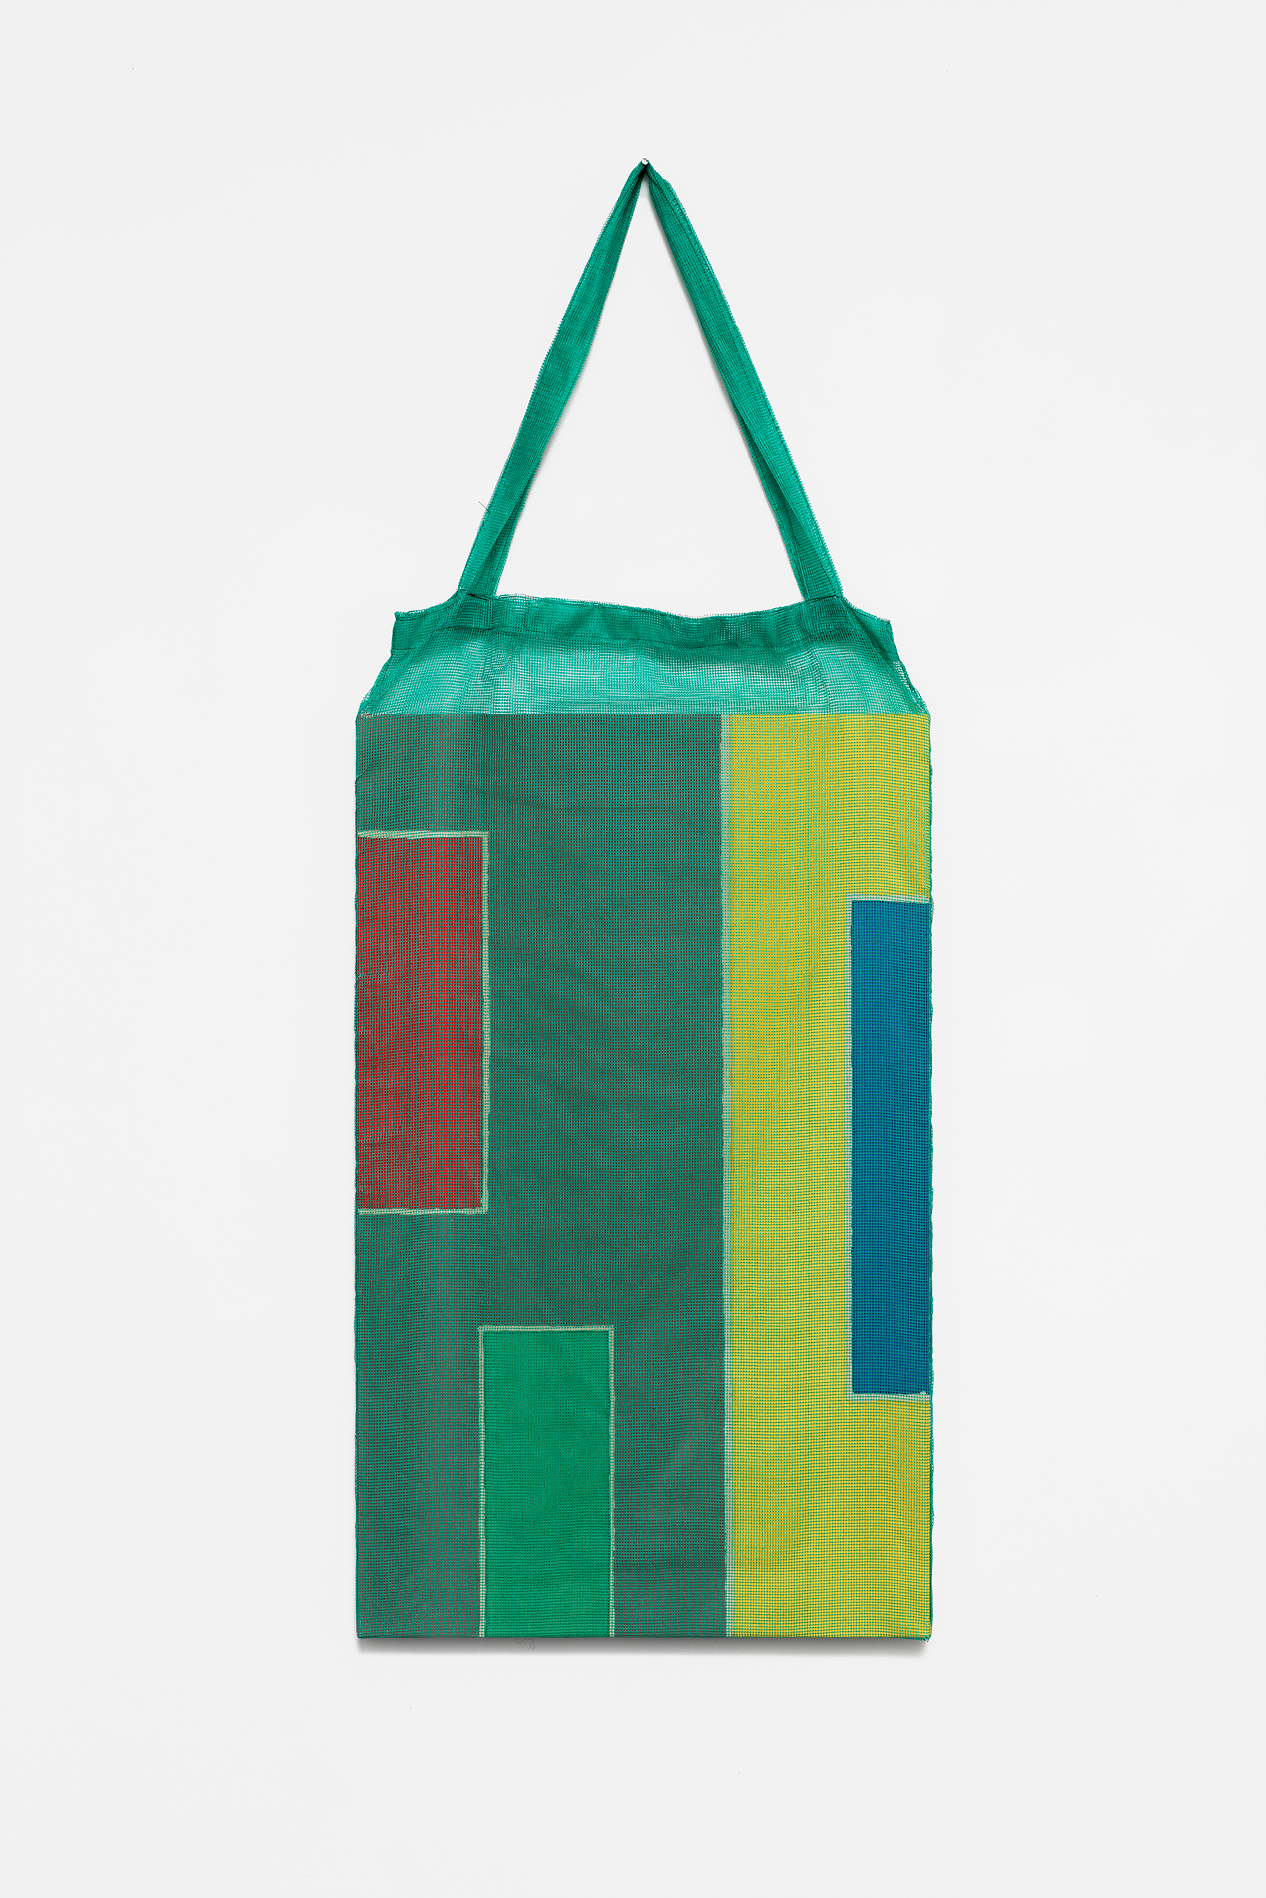 , 2018, Pigments on cotton fabric [batik] and bag, 120 x 46 x 3 cm, , unique artwork, Photo: Aurélien Mole